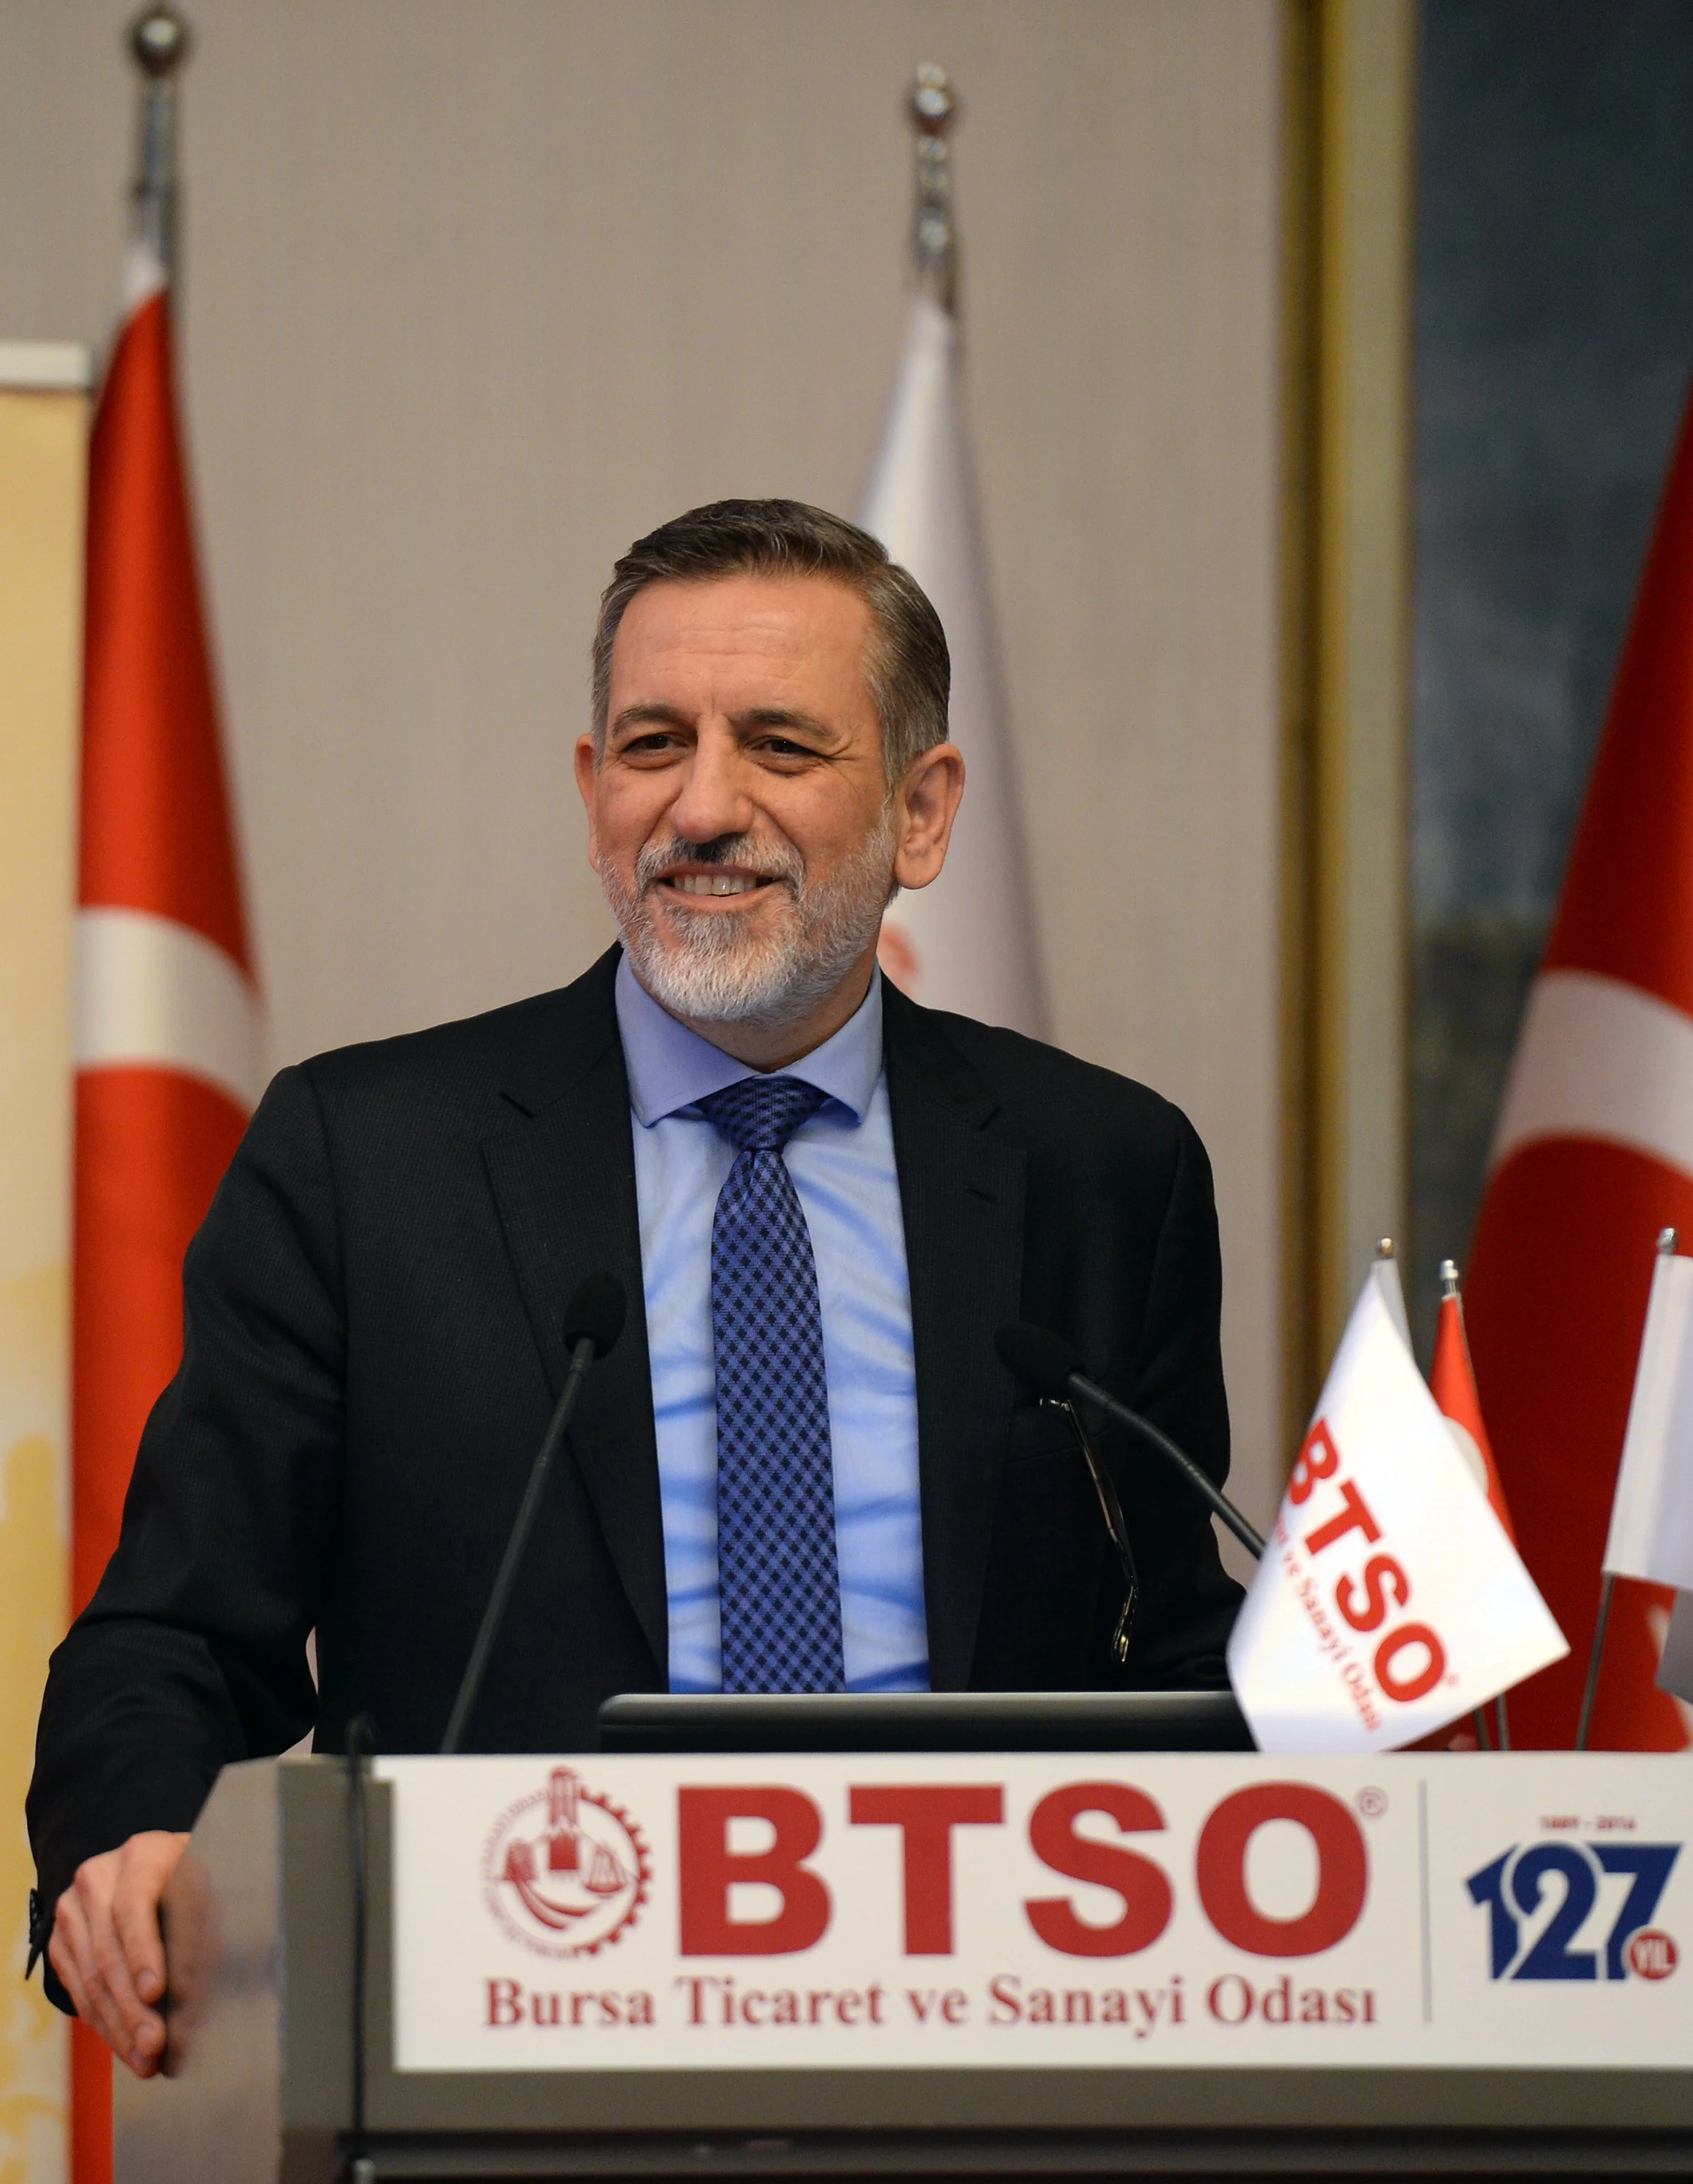 BTSO ve Anadolu Sigorta’dan ‘Güvenli Gelecek’ Protokolü